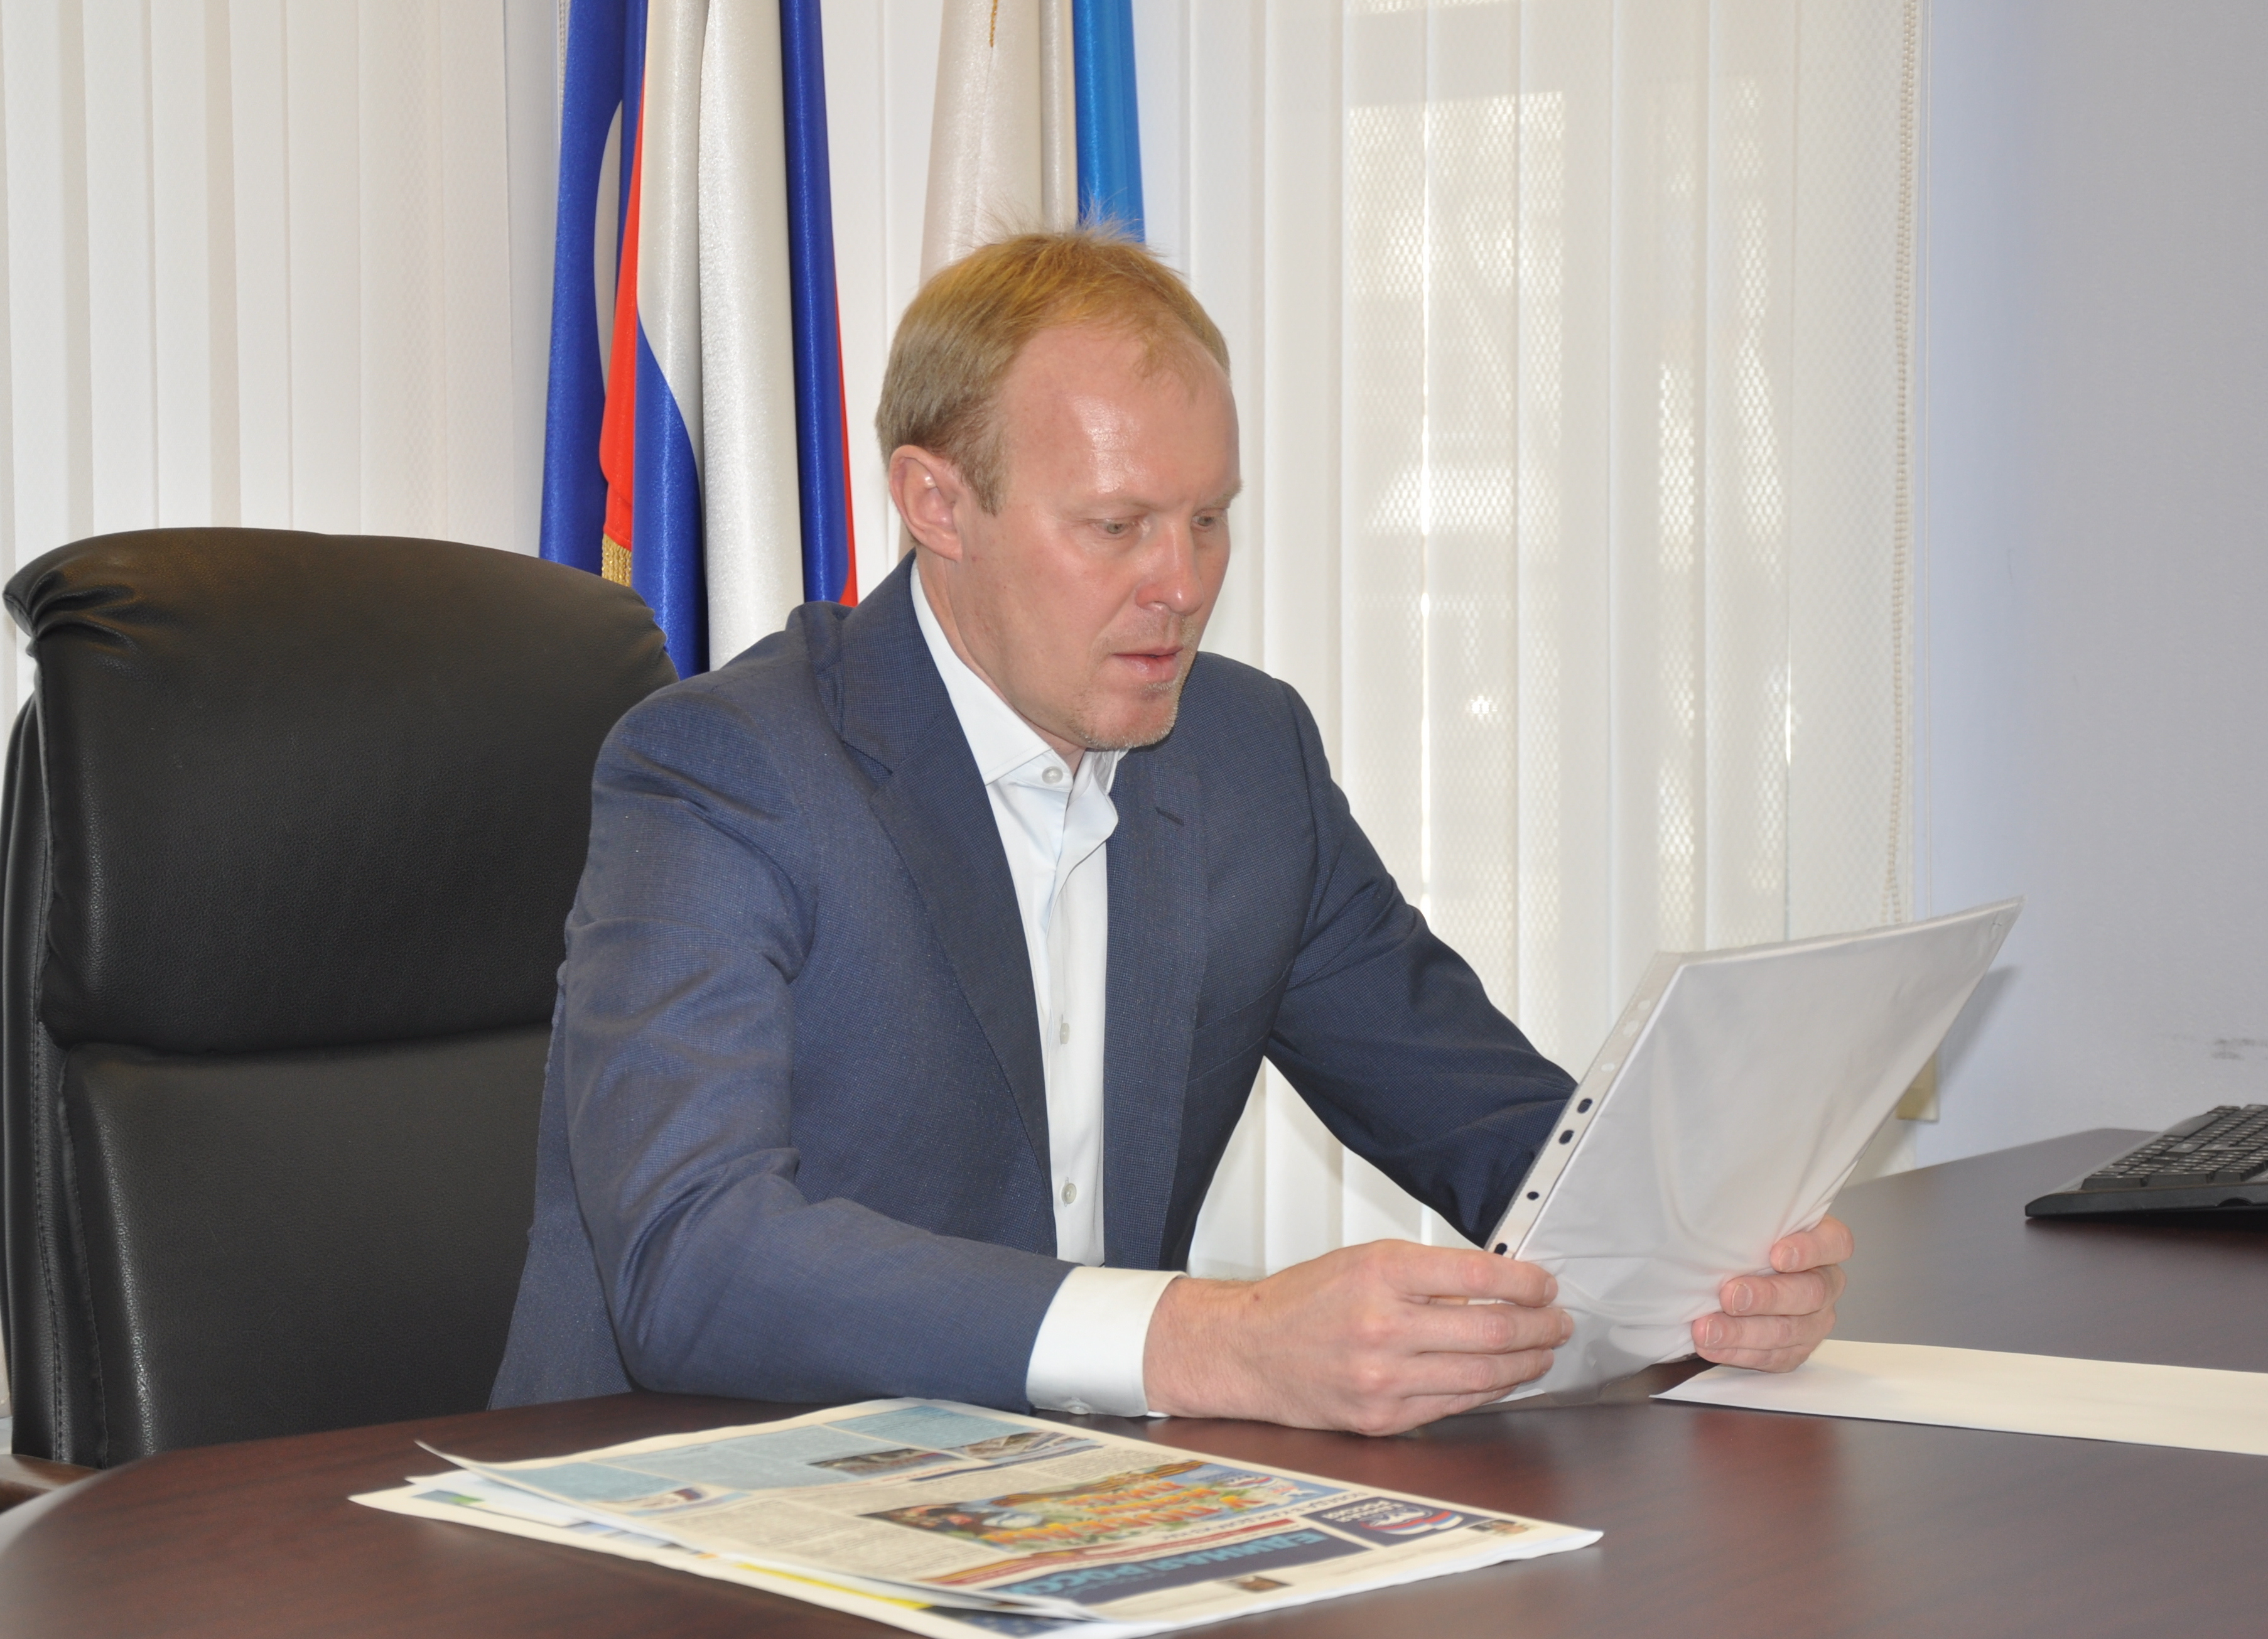 Сергей Чепиков, депутат Государственной Думы,  возобновил прием граждан   